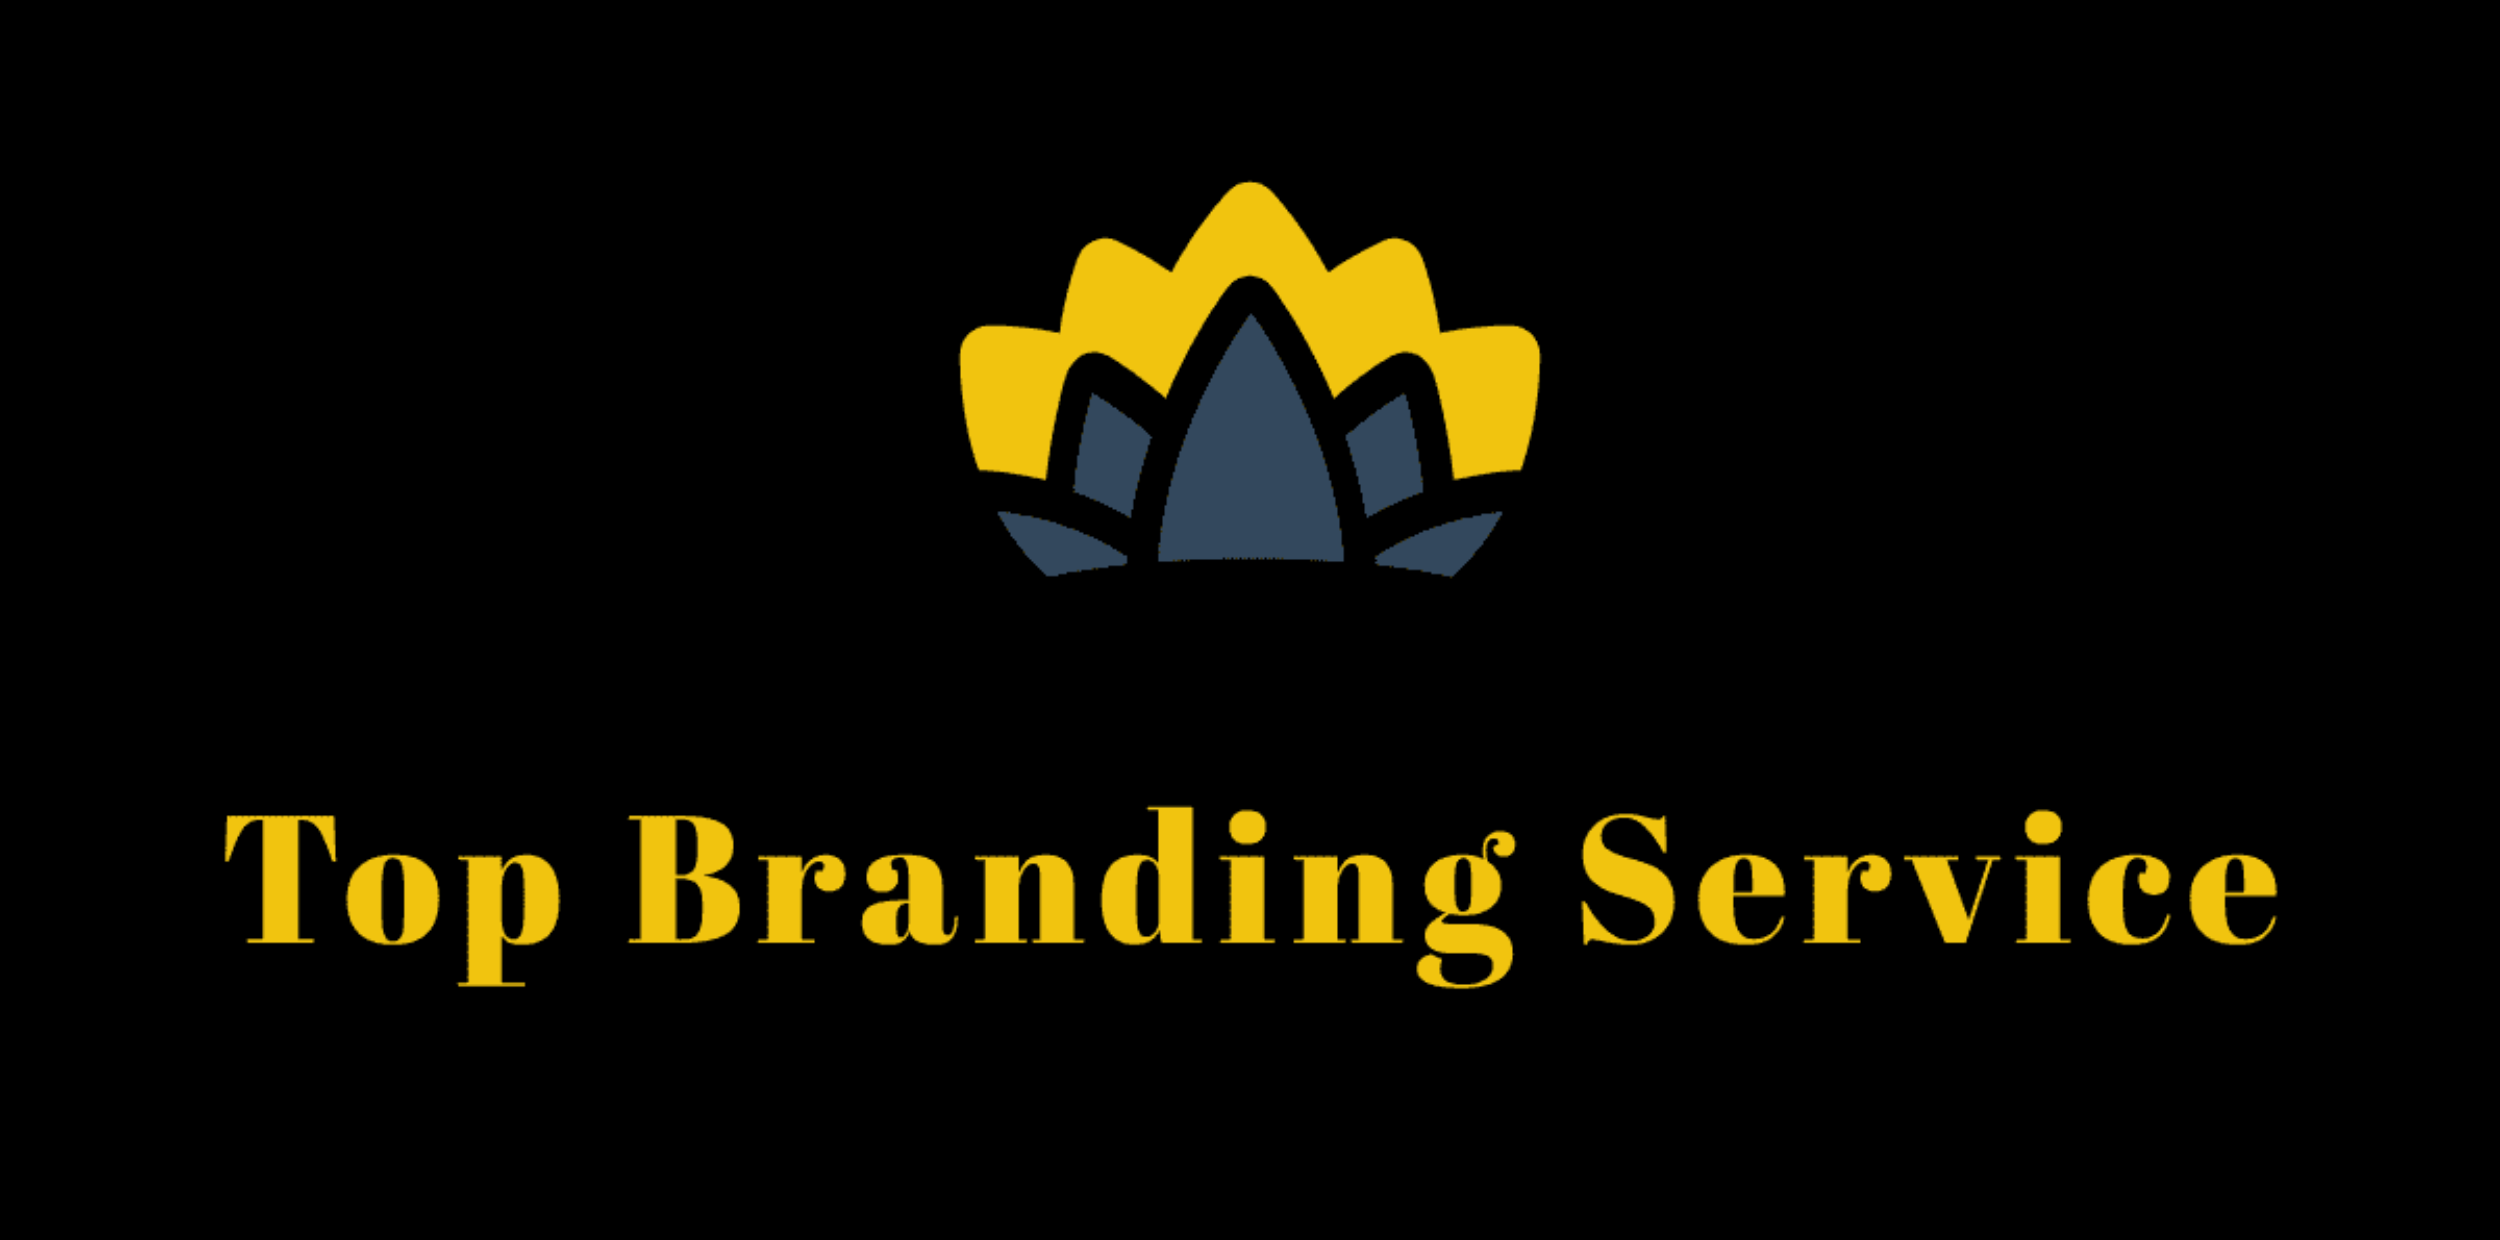 Top Branding Service